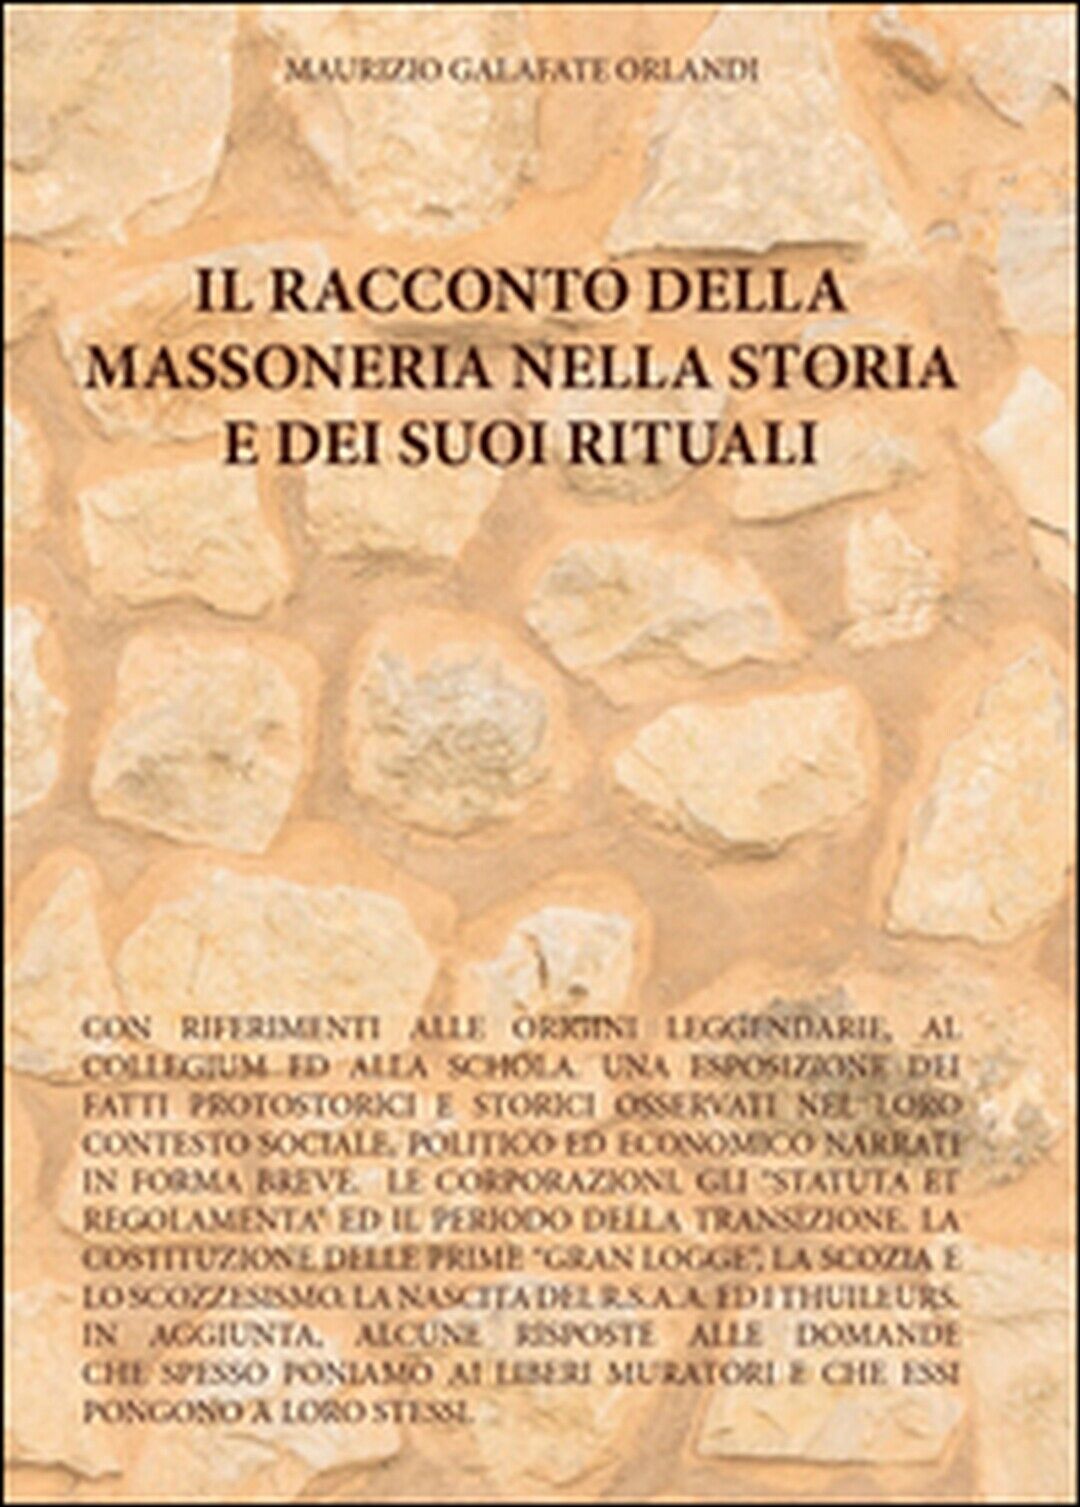 Il racconto della massoneria nella storia e dei suoi rituali (Orlandi, 2016) libro usato